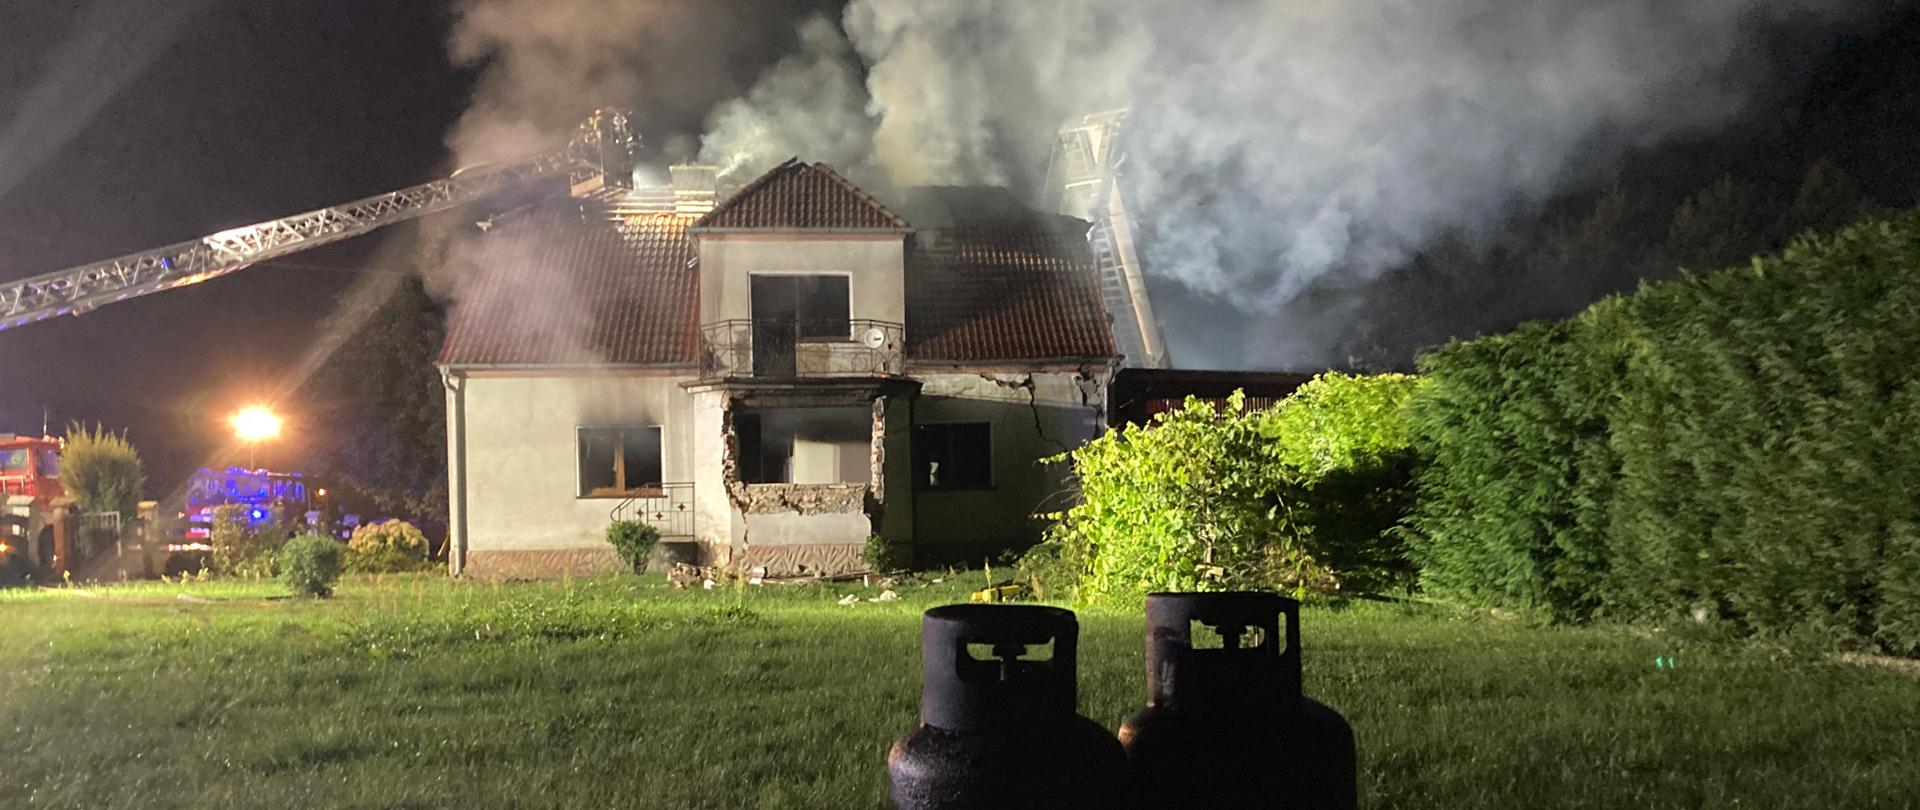 Zdjęcie przedstawia działania strażaków po wybuchu i pożarze w budynku mieszkalnym. Na pierwszym planie wyniesione z obiektu dwie butle gazowe.